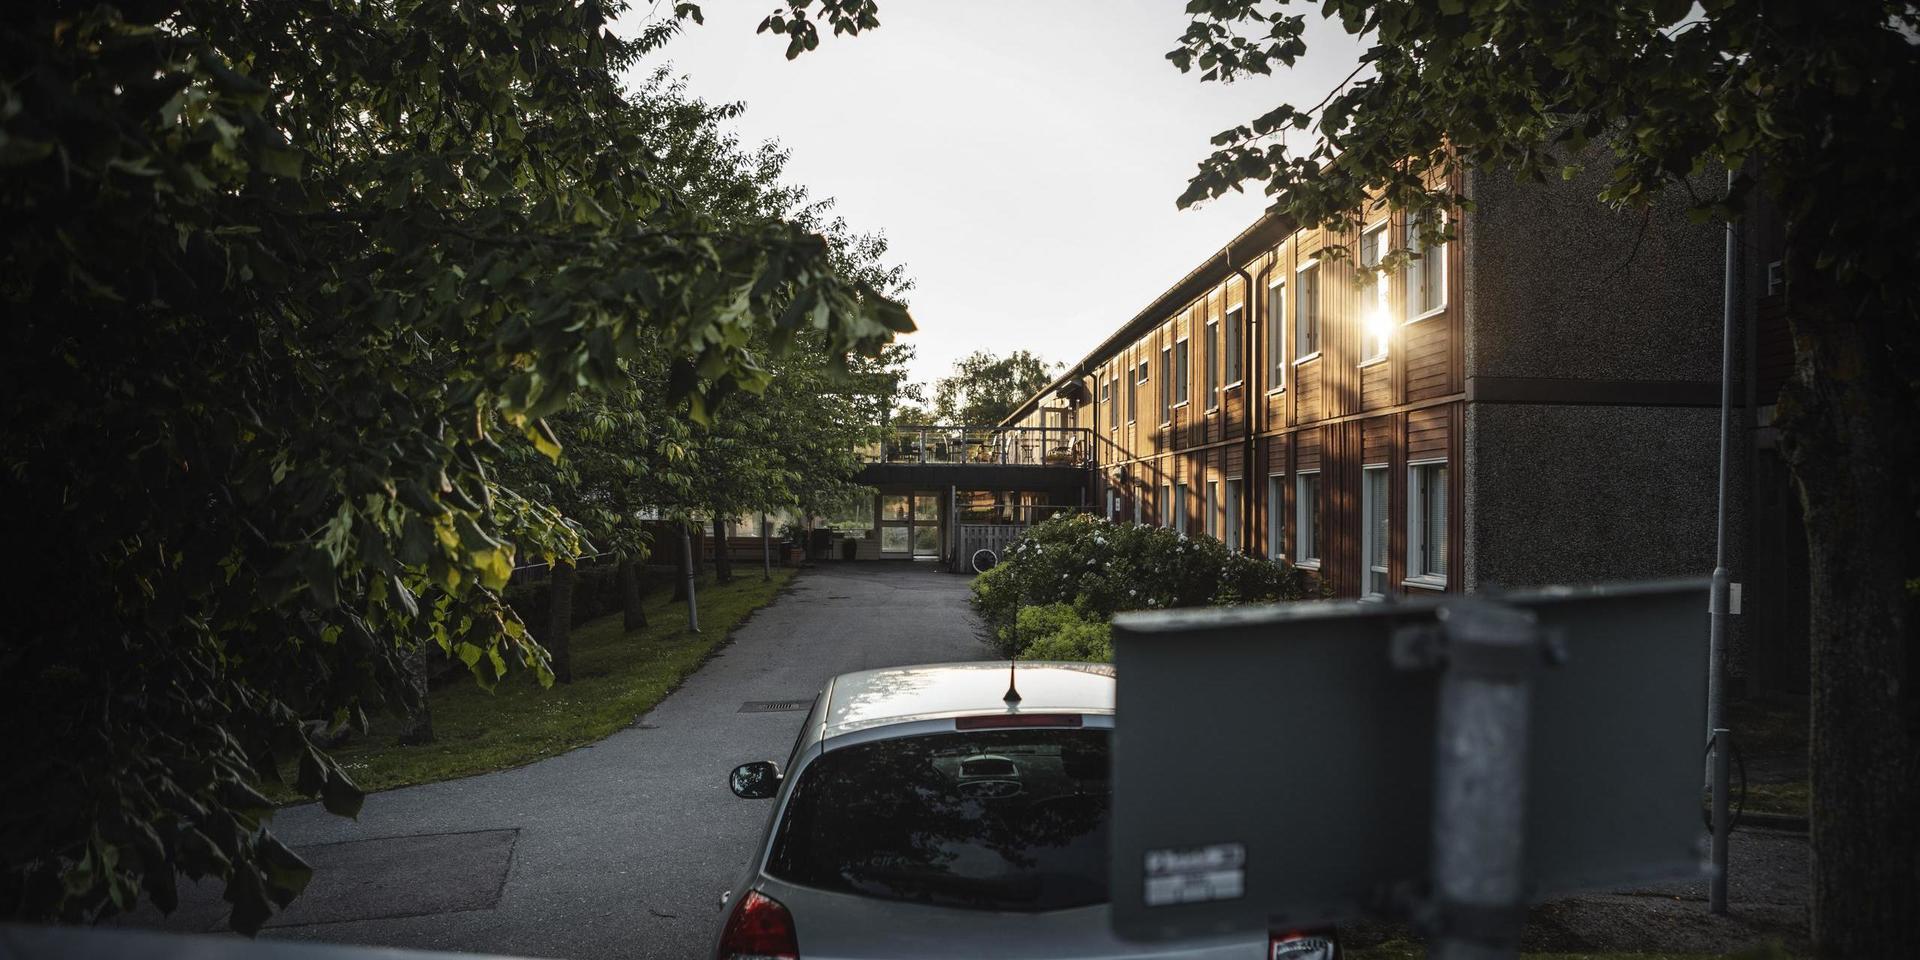 Äldreboendet Åkerhus är ett av de äldreboenden som GP skrivit om tidigare i år kopplat till smittspridningen av covid-19. Nu ska alla äldreboenden i staden vara smittfria.